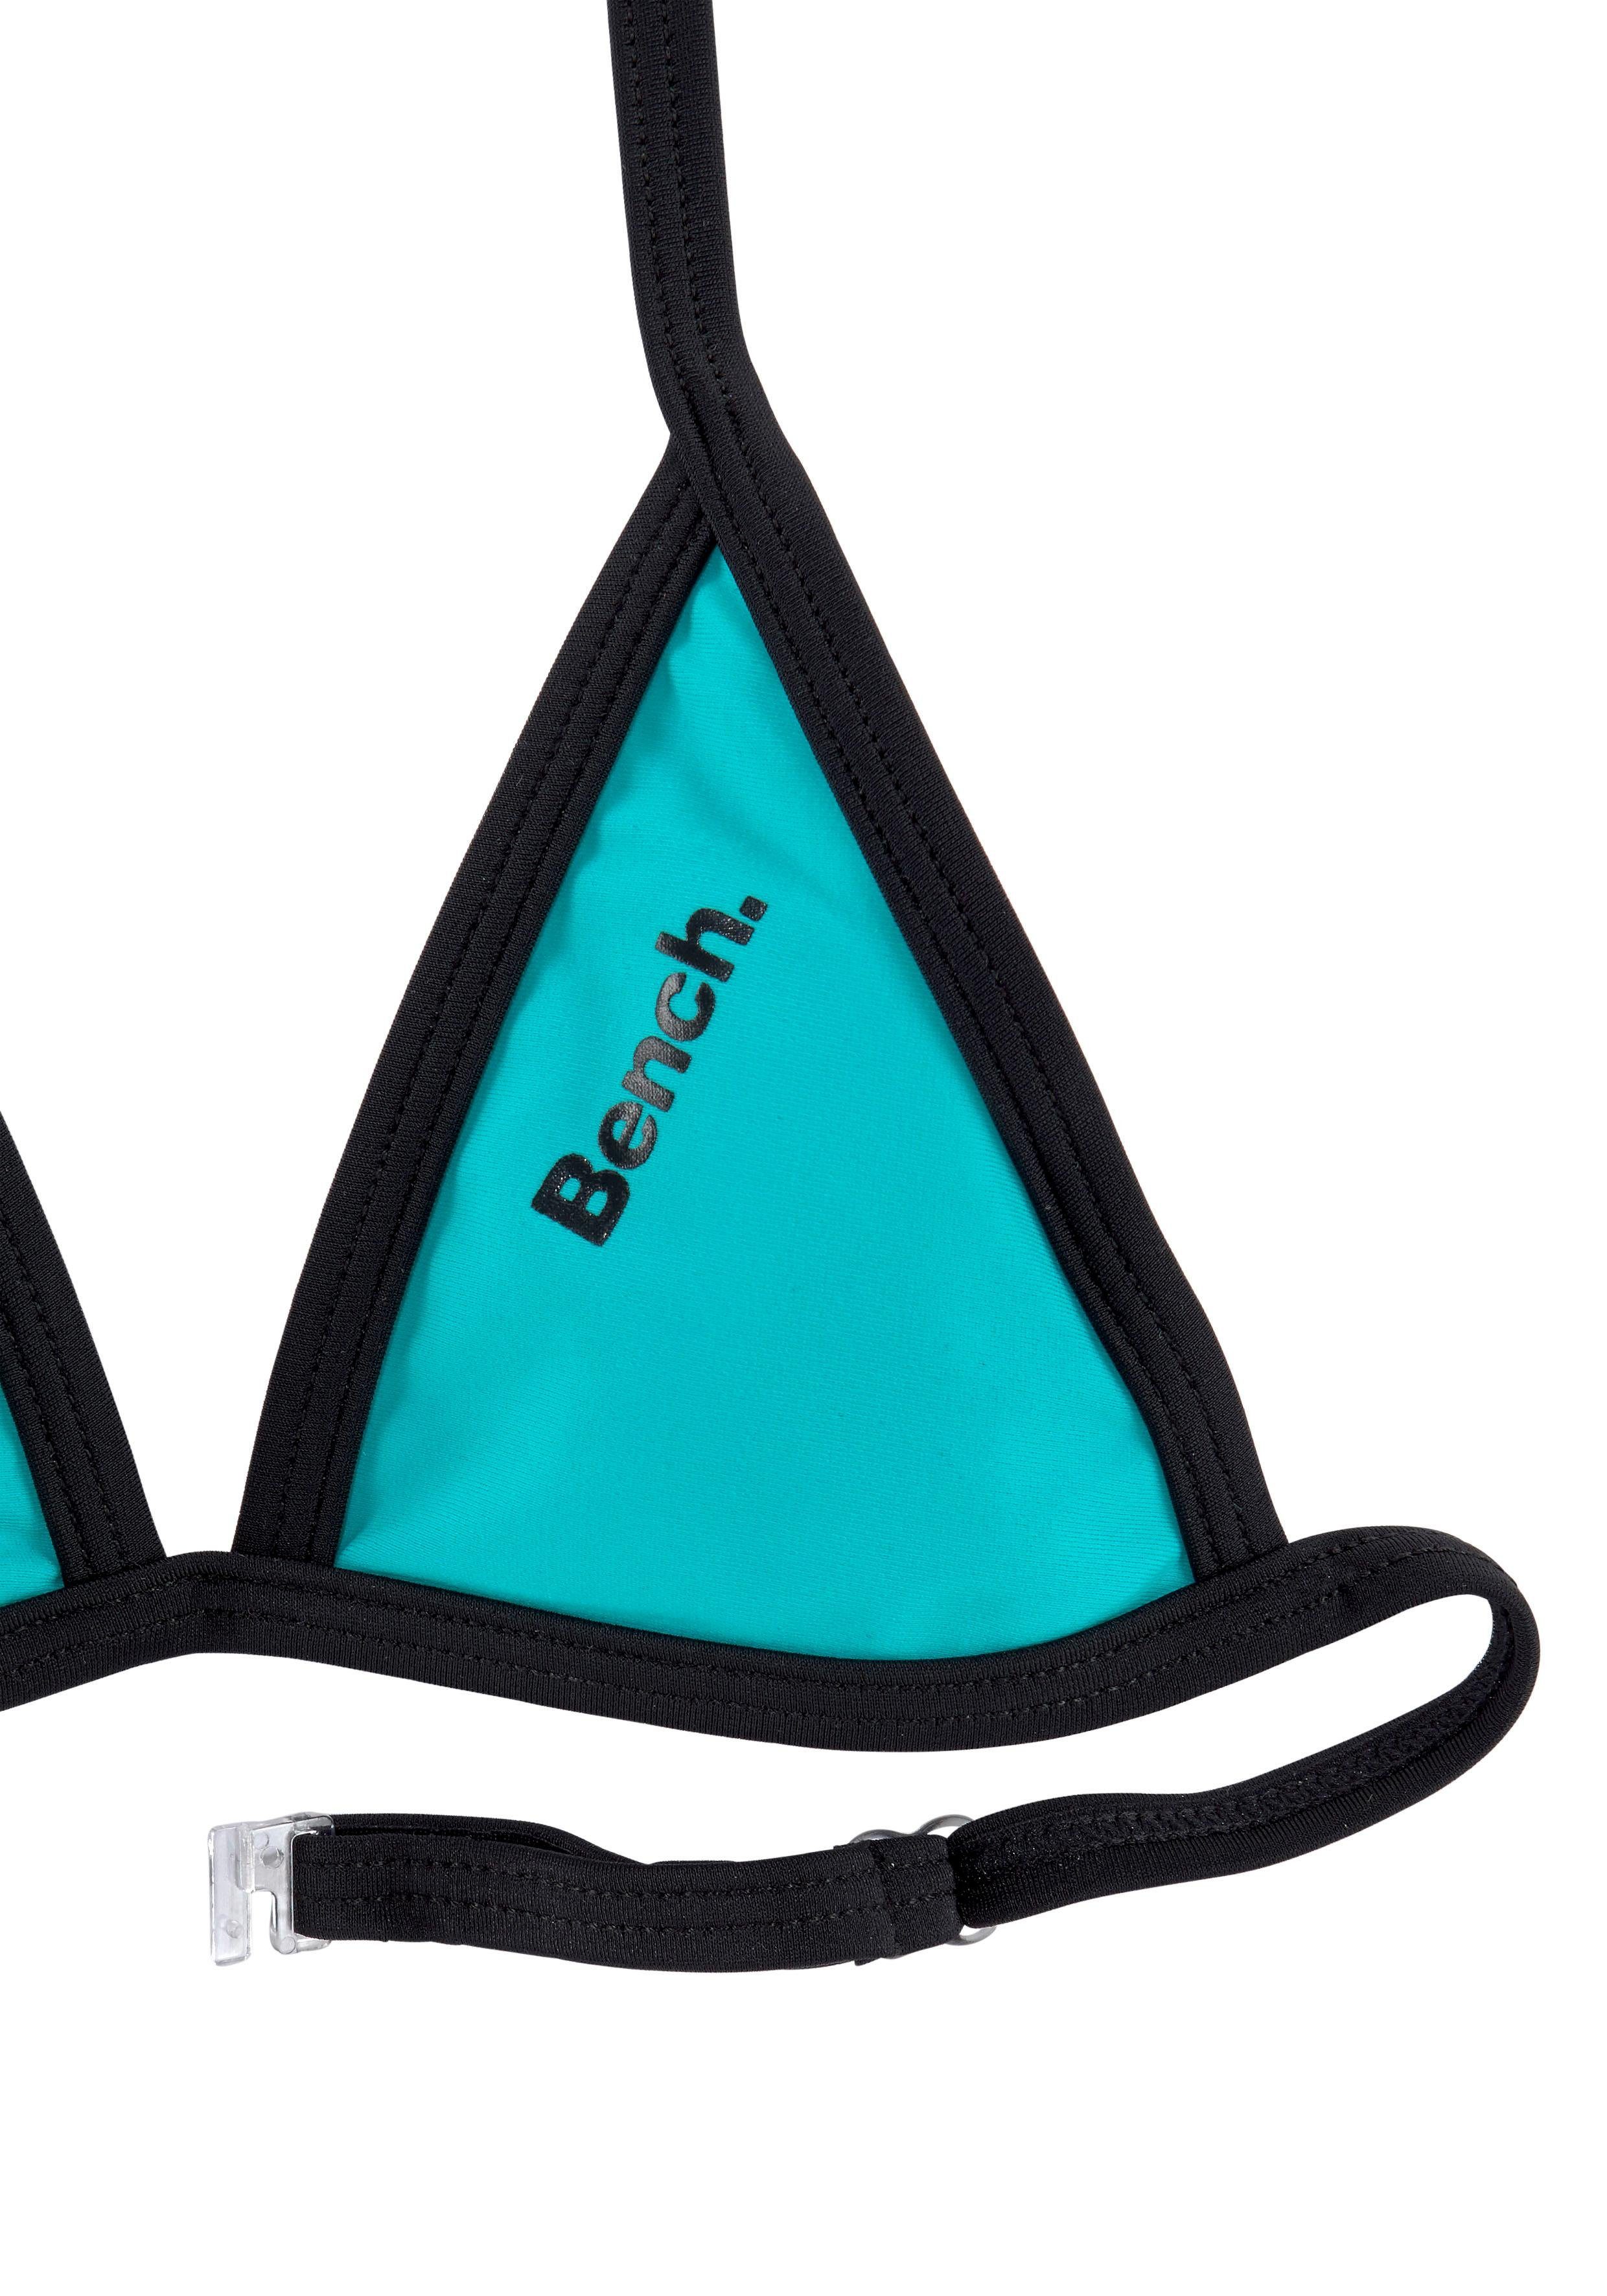 Bench. Triangel-Bikini mit Logoprint an und türkis-schwarz Hose Top